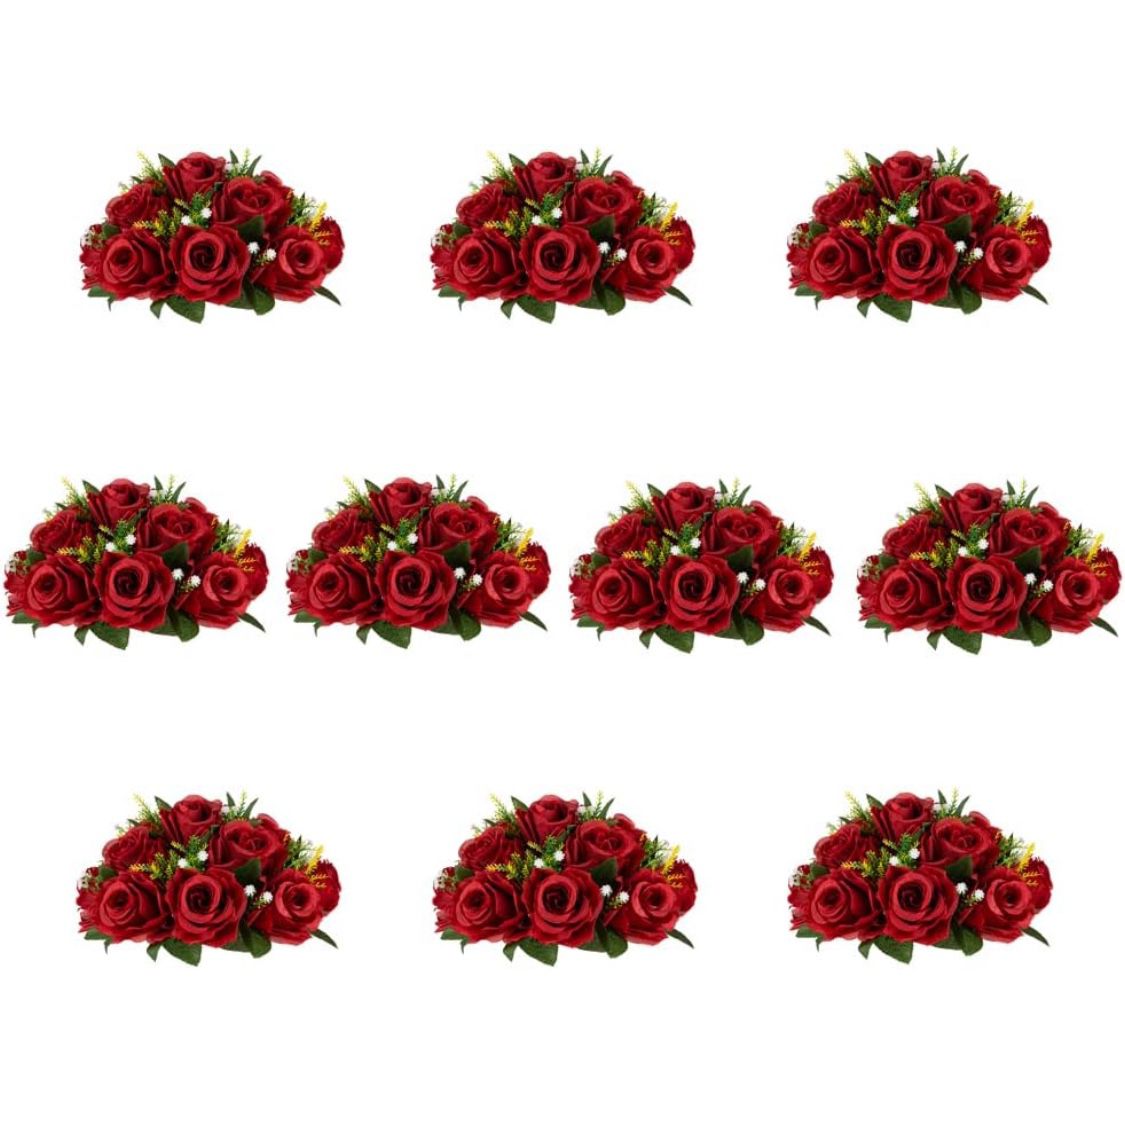 Inweder Wedding Flower Balls for Centerpieces - 10 Pcs Artificial Flower Ball Arrangement Bouquet, Fake Flowers Rose Balls for Weddings, Birthday Part